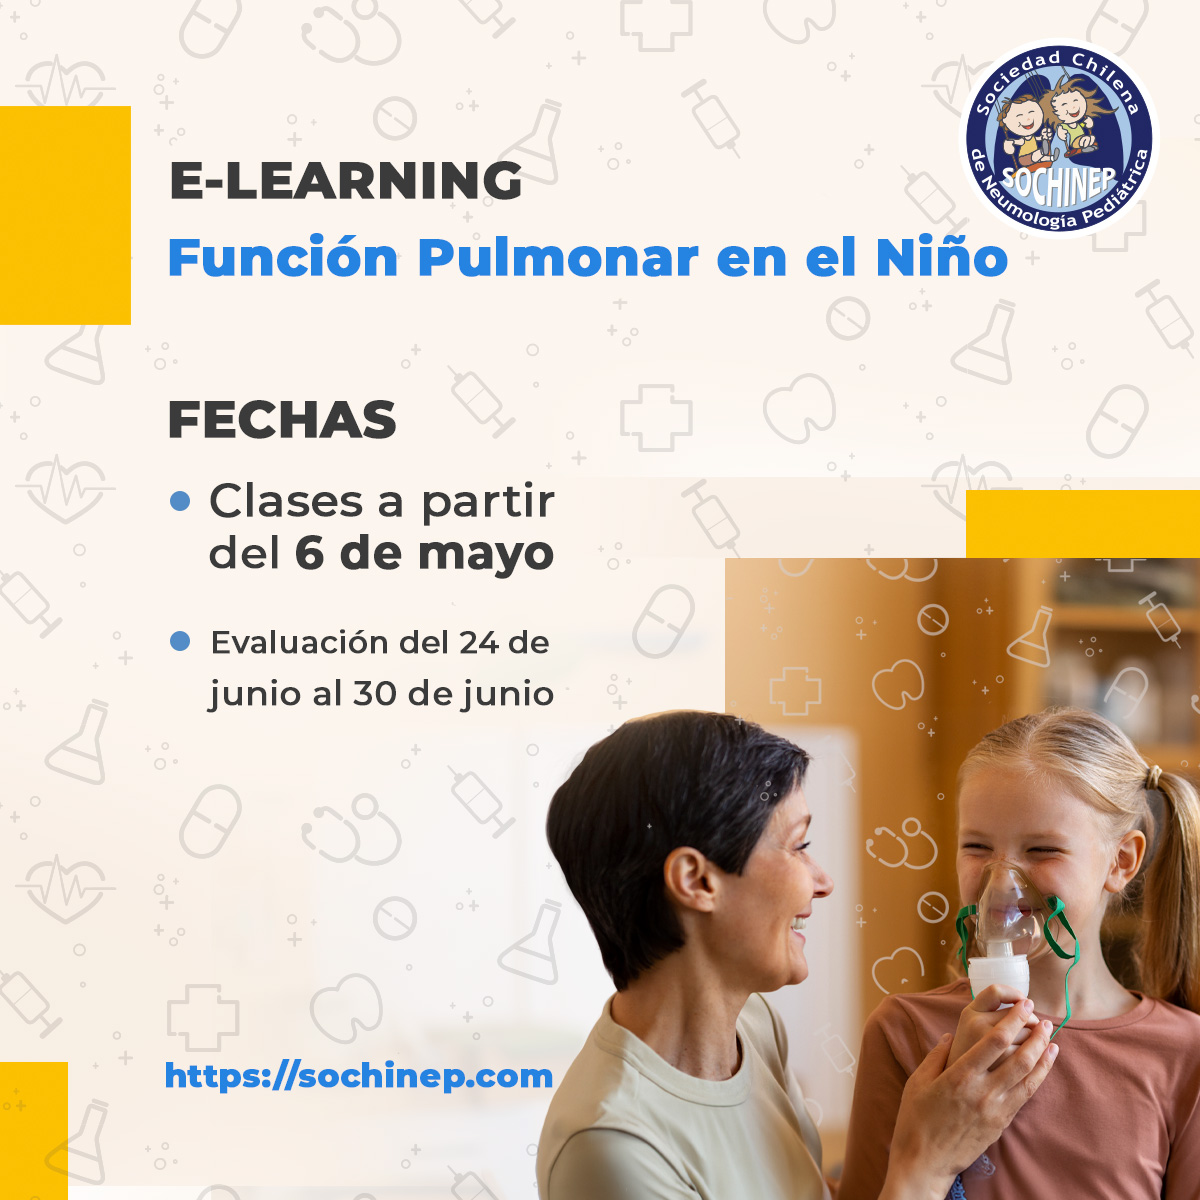 E-Learning Función Pulmonar en el Niño